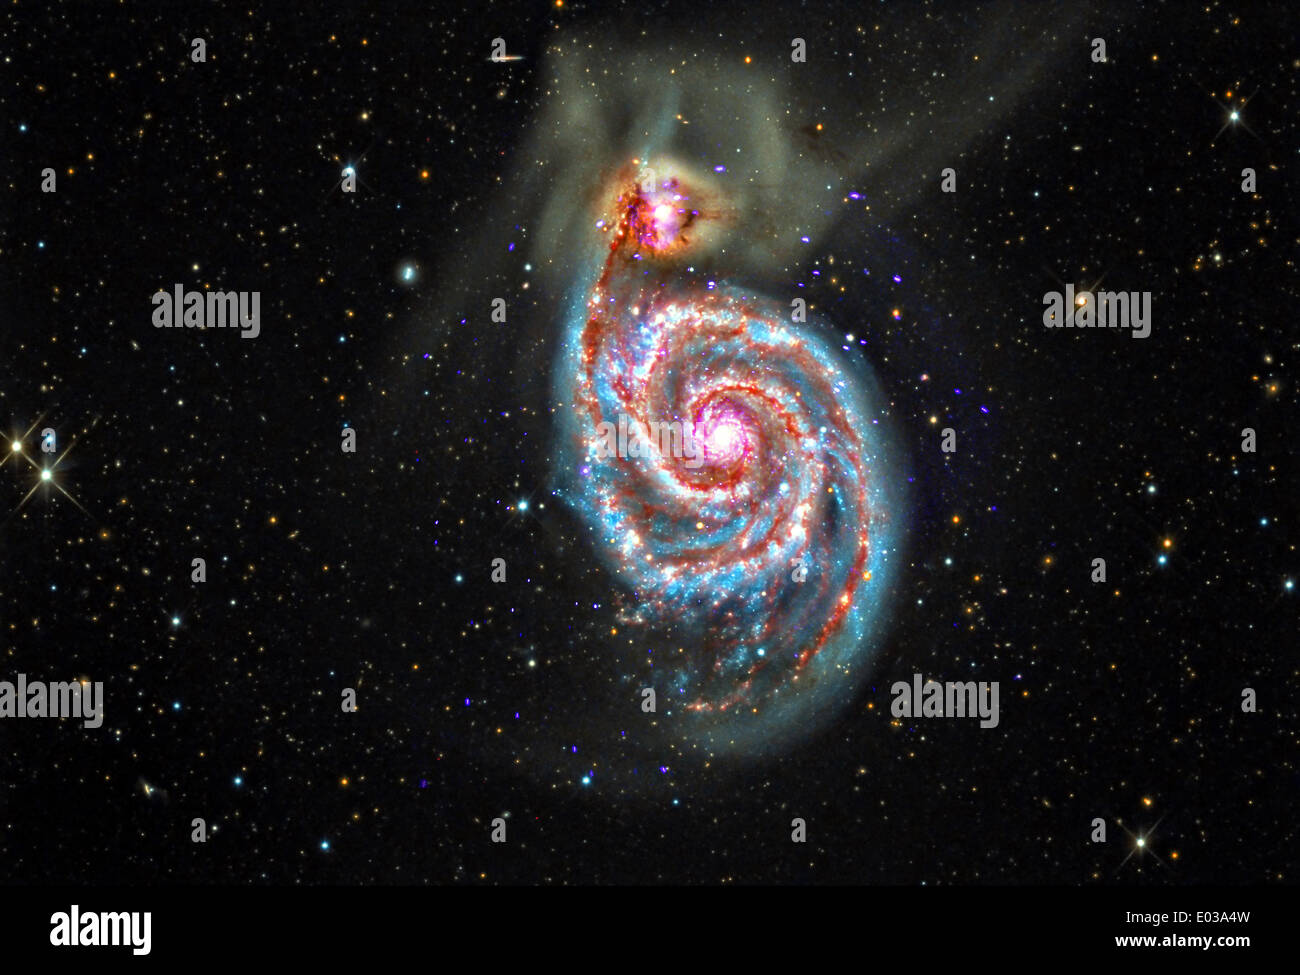 Galassia a spirale conosciuta come M51, che si trova circa 30 milioni di anni luce di distanza dalla Terra è nel processo di fusione con una minore galaxy visto al suo superiore sinistra catturati dal Chandra Space Telescope. Credito: Planetpix/Alamy Live News Foto Stock